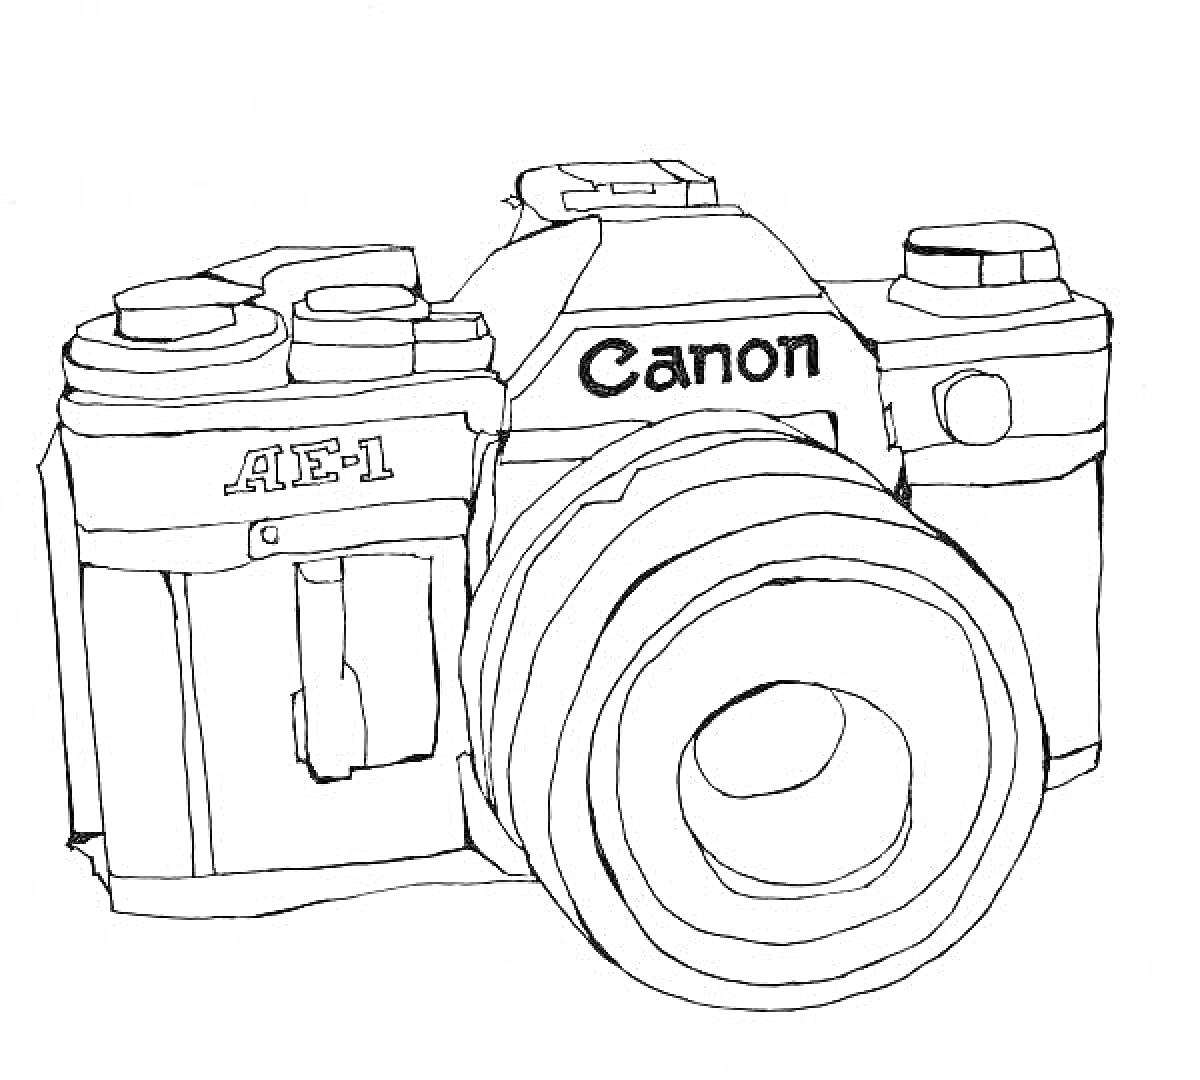 Фотоаппарат Canon AE-1 с объективом